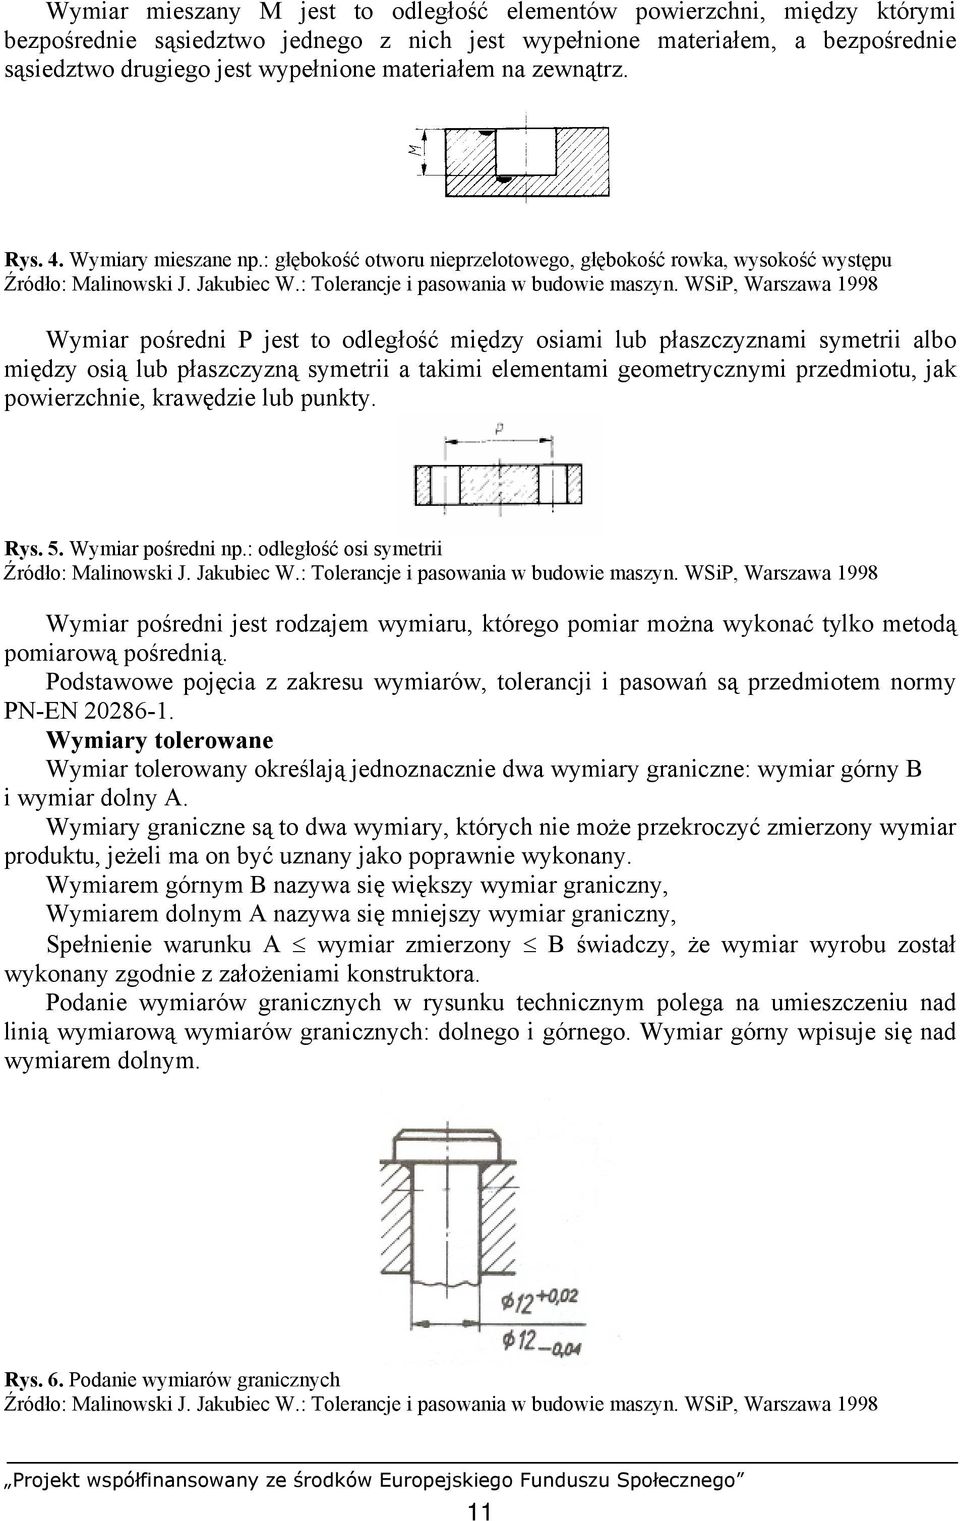 WSiP, Warszawa 1998 Wymiar pośredni P jest to odległość między osiami lub płaszczyznami symetrii albo między osią lub płaszczyzną symetrii a takimi elementami geometrycznymi przedmiotu, jak